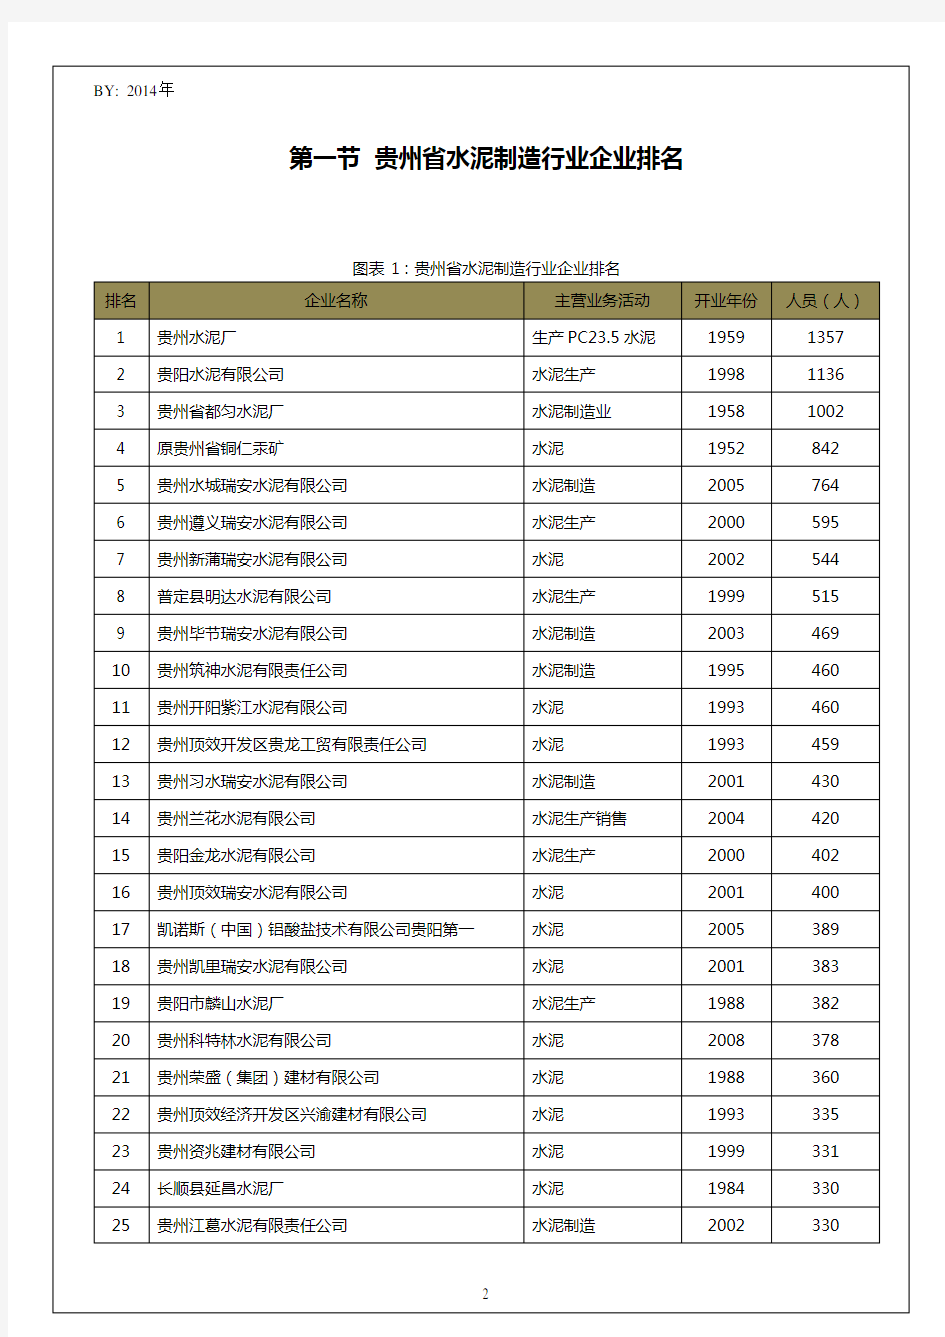 贵州省水泥制造行业企业排名统计报告